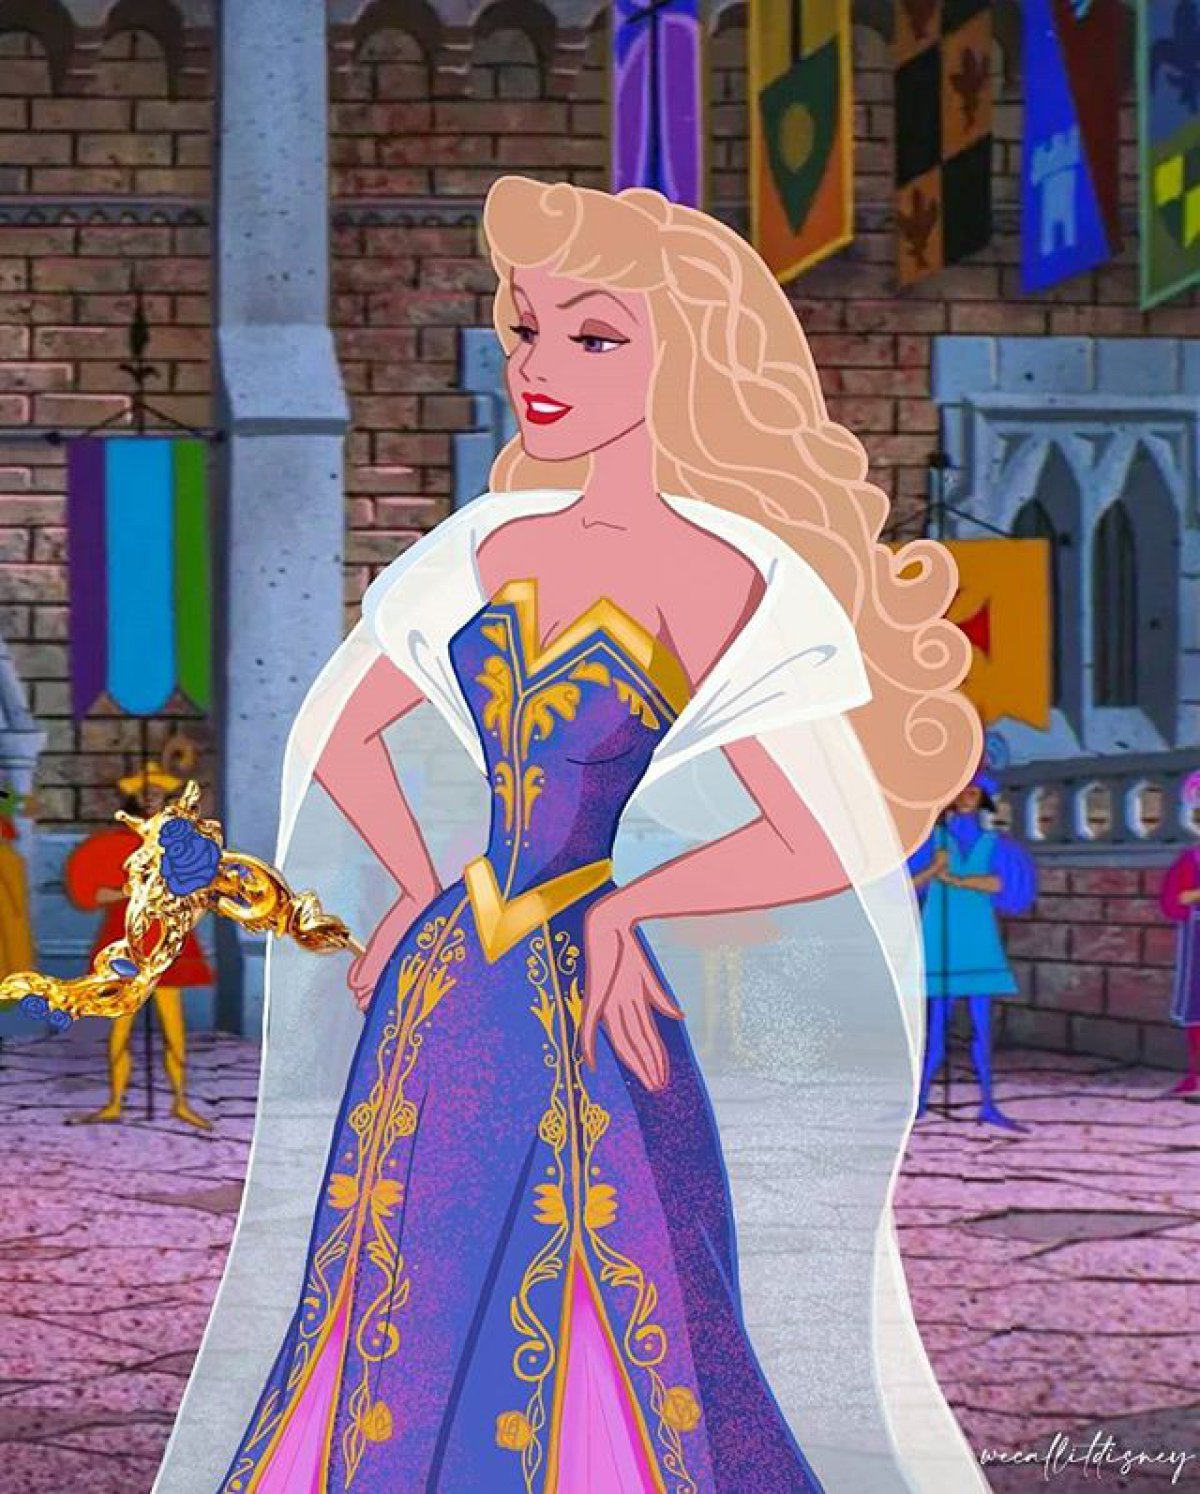 Artista les cambia el vestido a las princesas de Disney